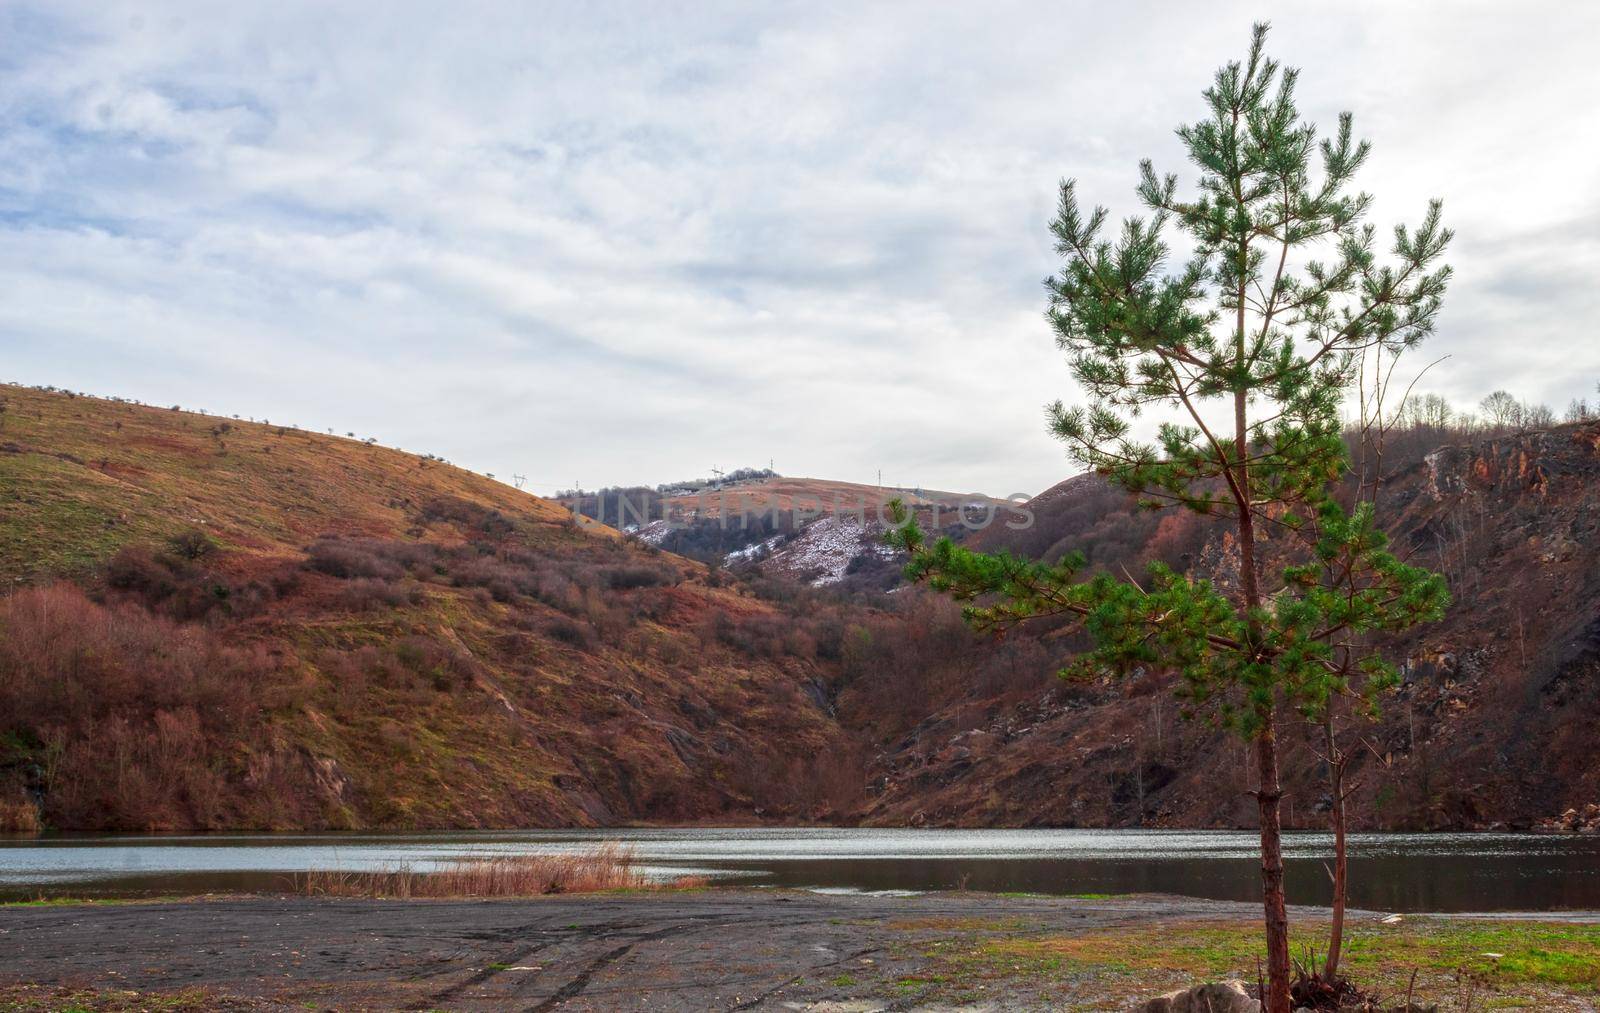 A fir tree near a coal lake overlooking the frozen hill